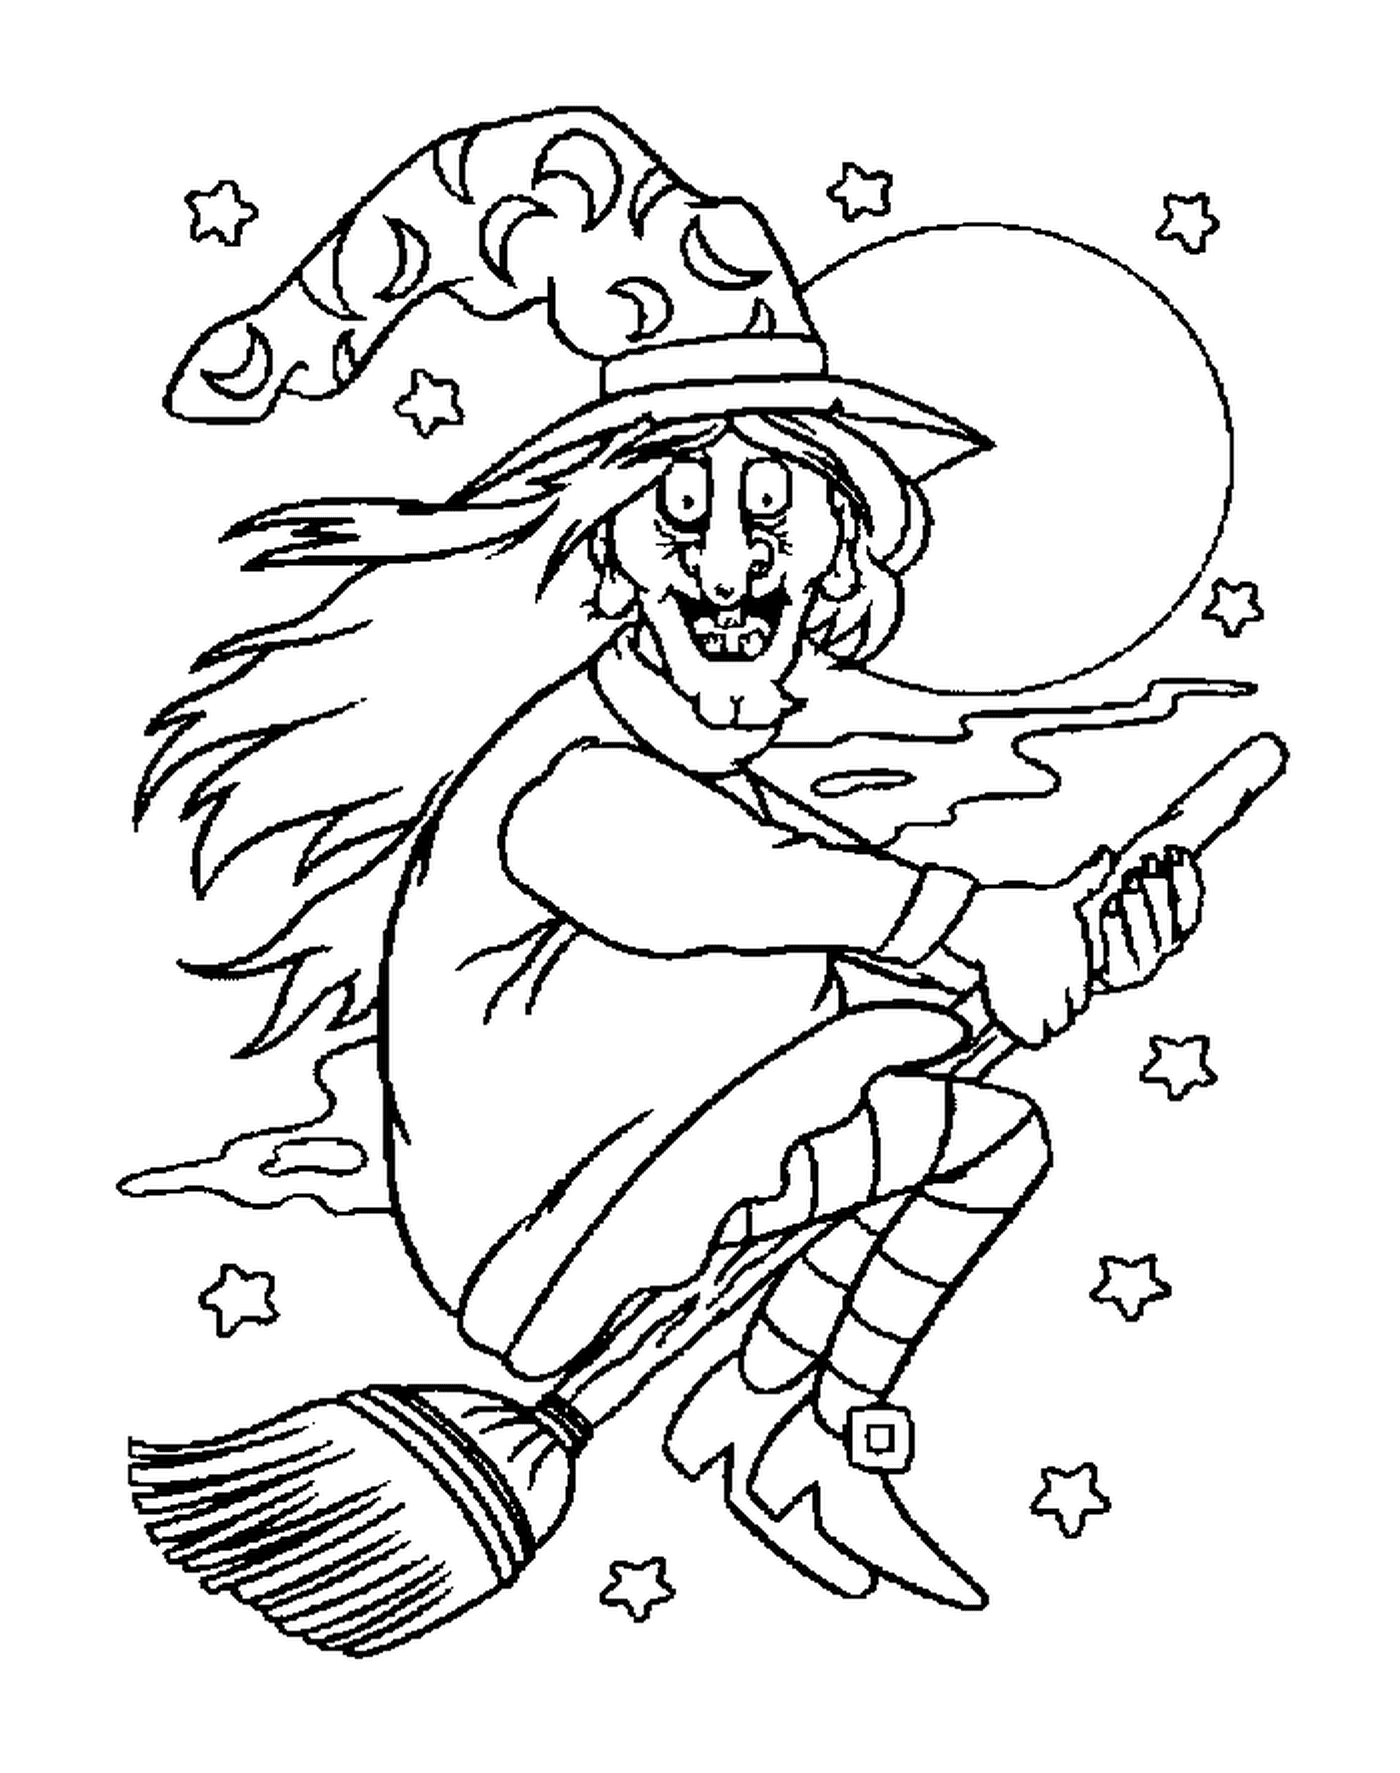  女巫在星夜中在扫帚上飞翔 